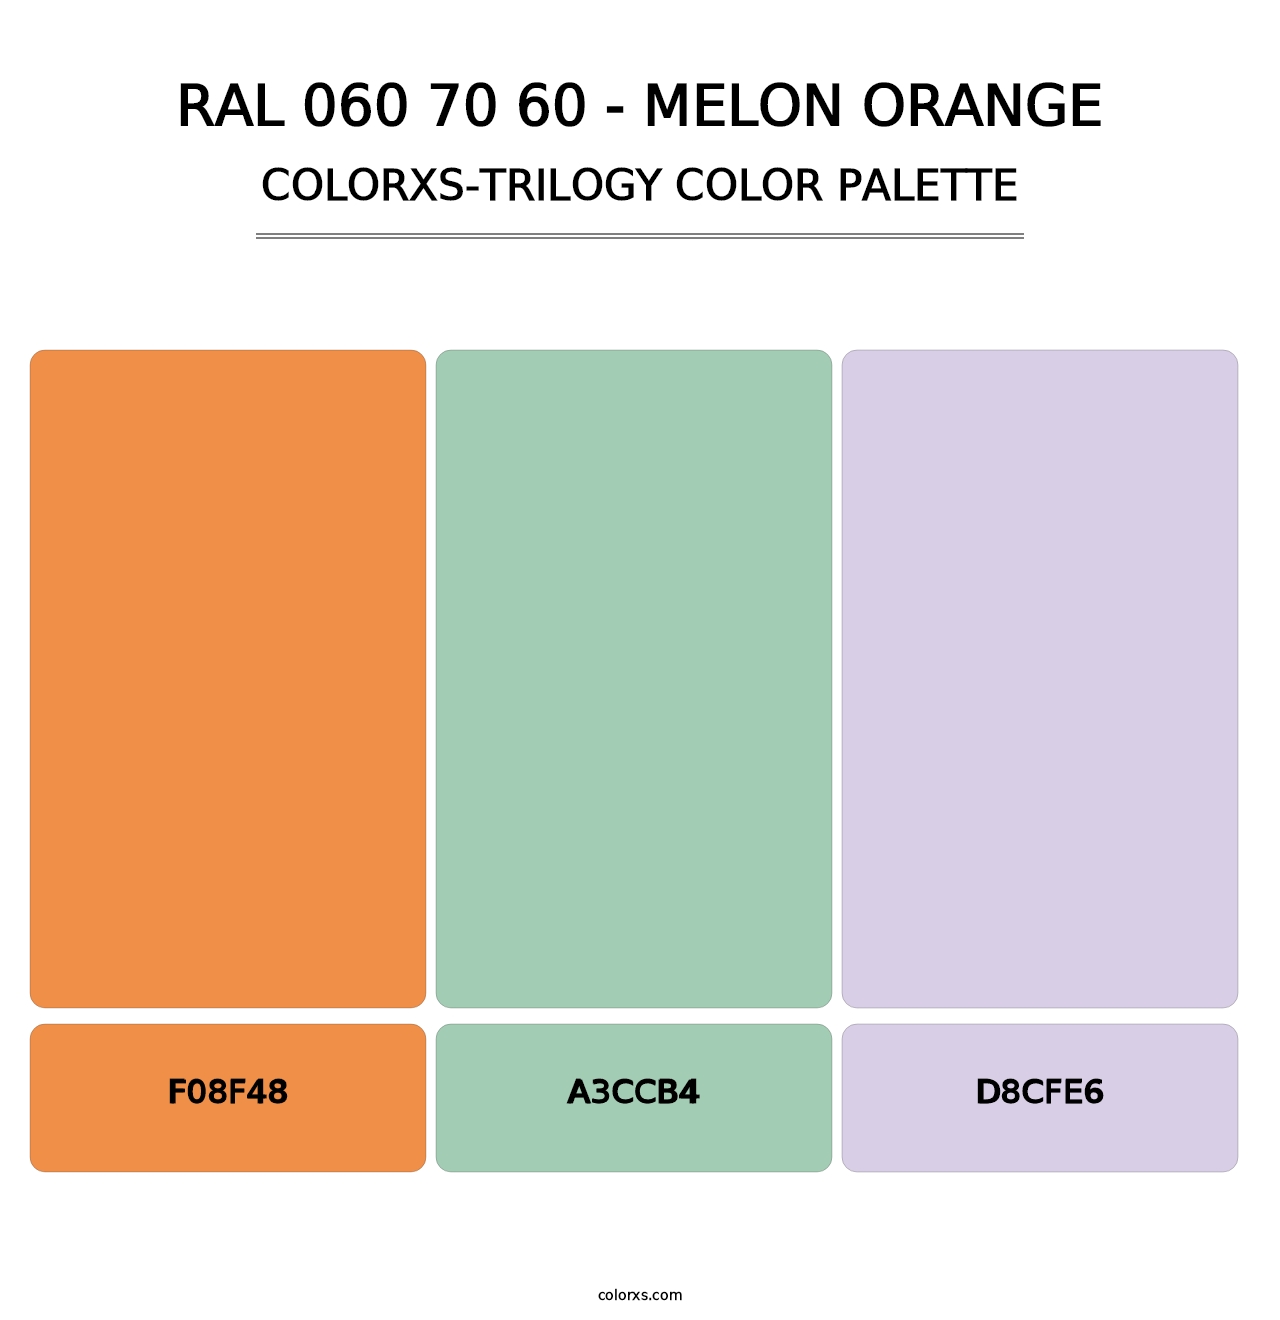 RAL 060 70 60 - Melon Orange - Colorxs Trilogy Palette